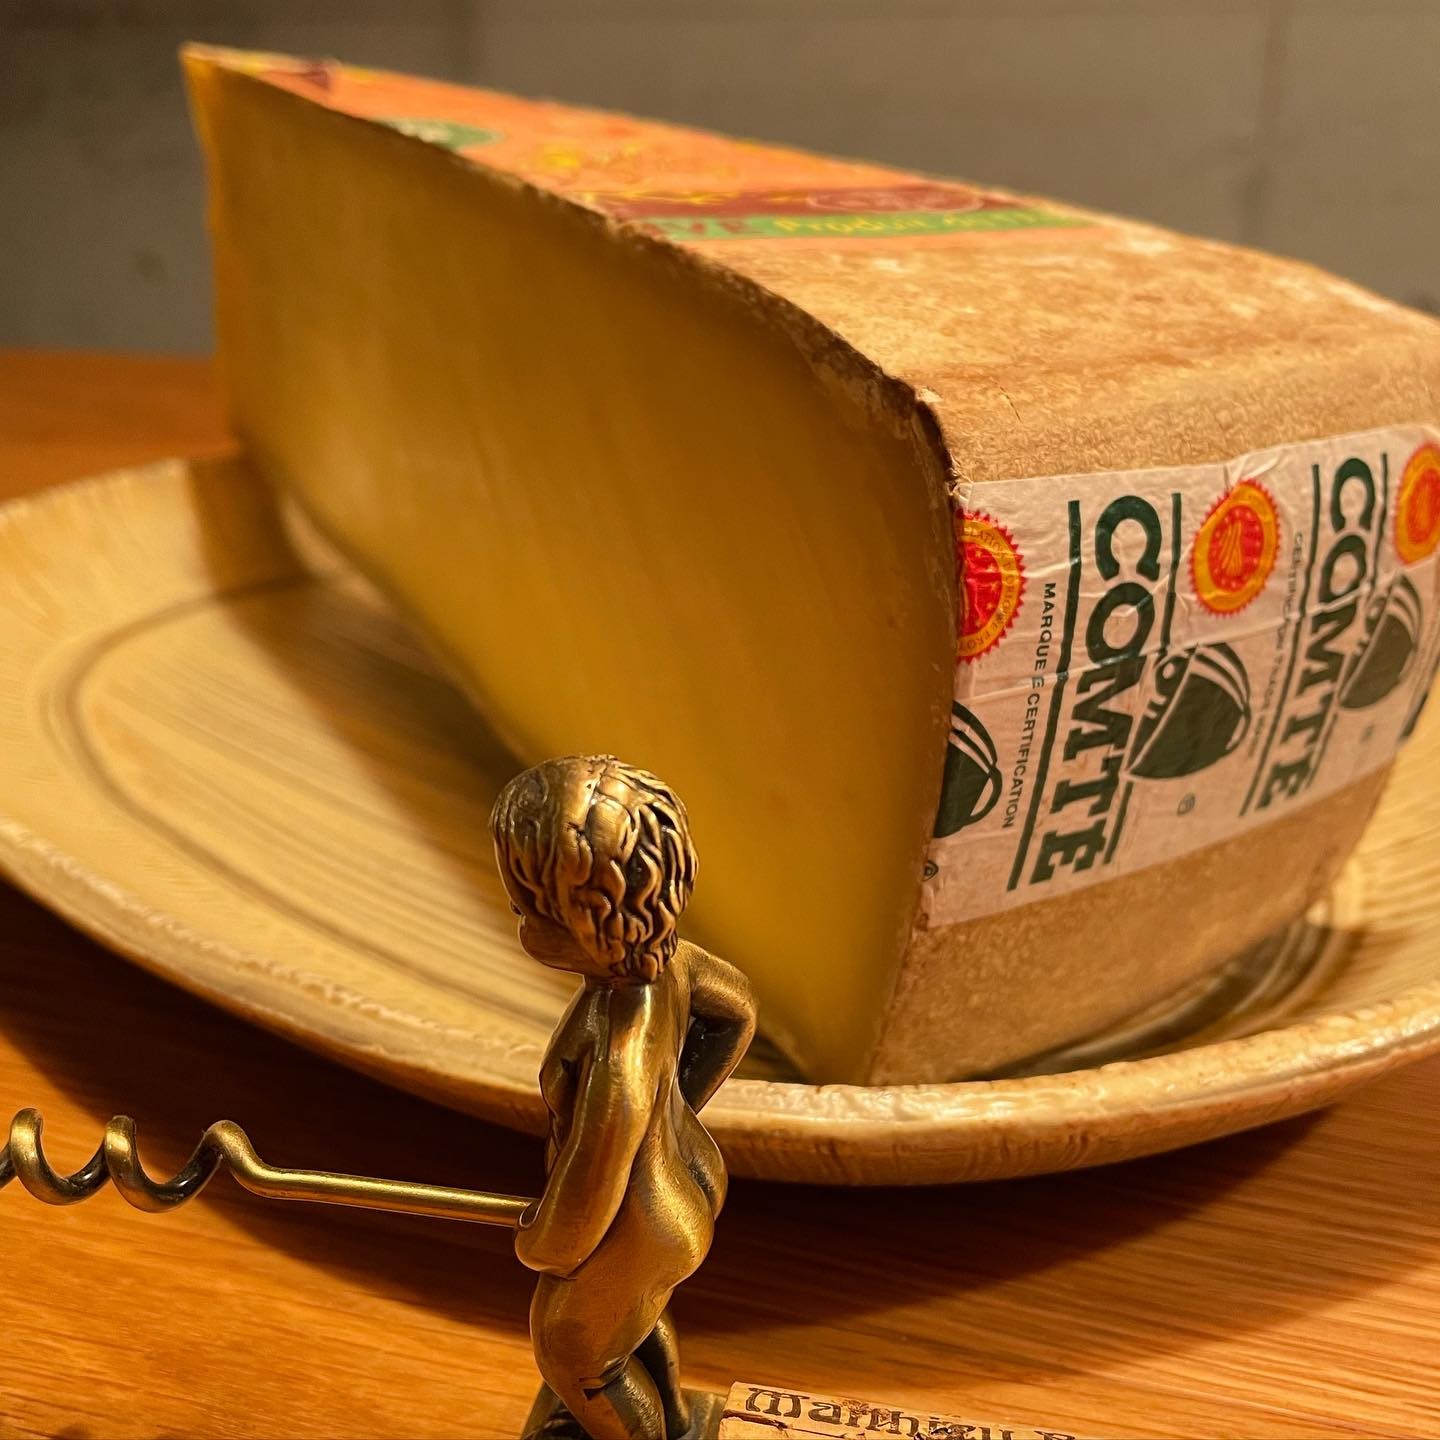 大きなカットのチーズが入ると幸せな気持ちになります。このコンテチーズはグラタンに載せてます。#イルフェソワフ #ワイン#日本酒 #薬院#警固#焼き鳥#12が月のコンテチーズ#ジュラのチーズ